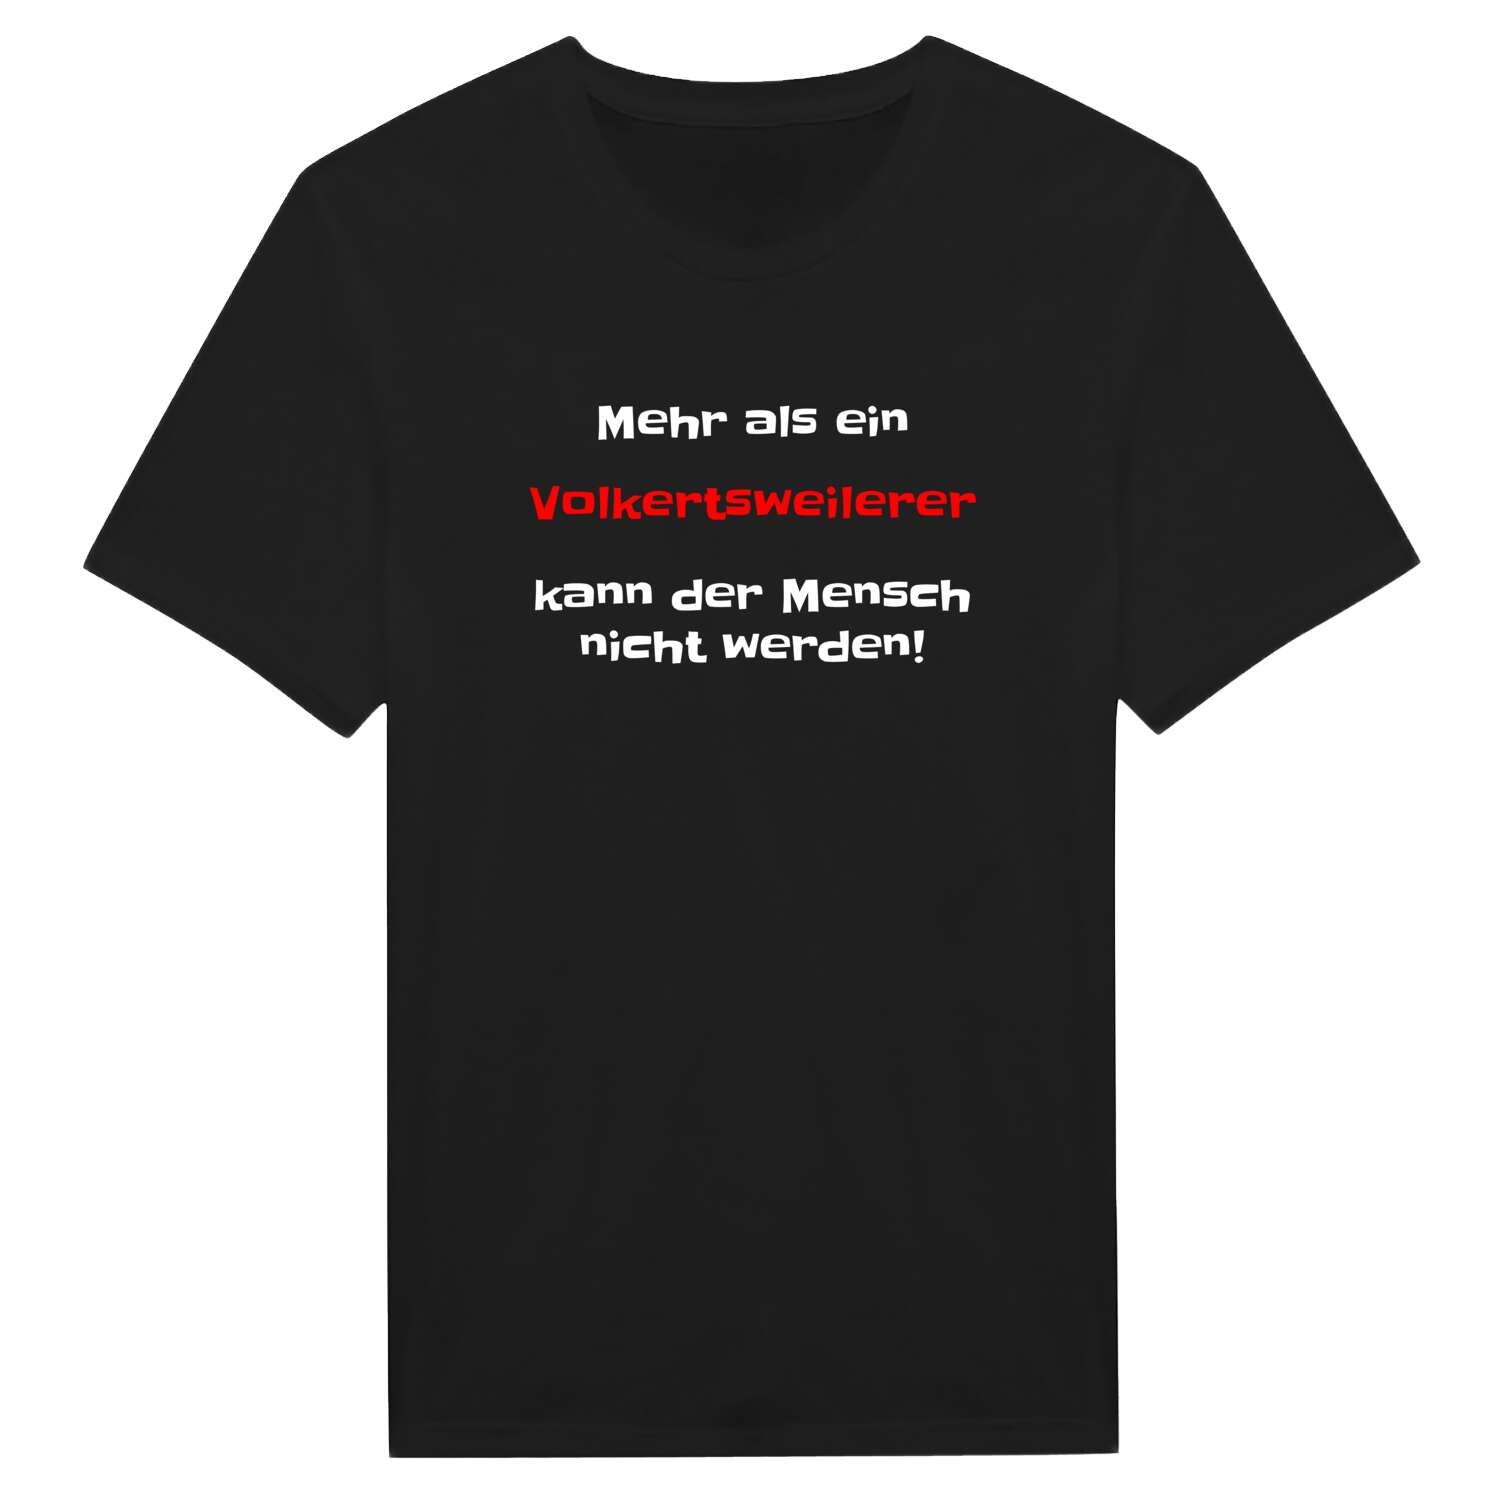 Volkertsweiler T-Shirt »Mehr als ein«